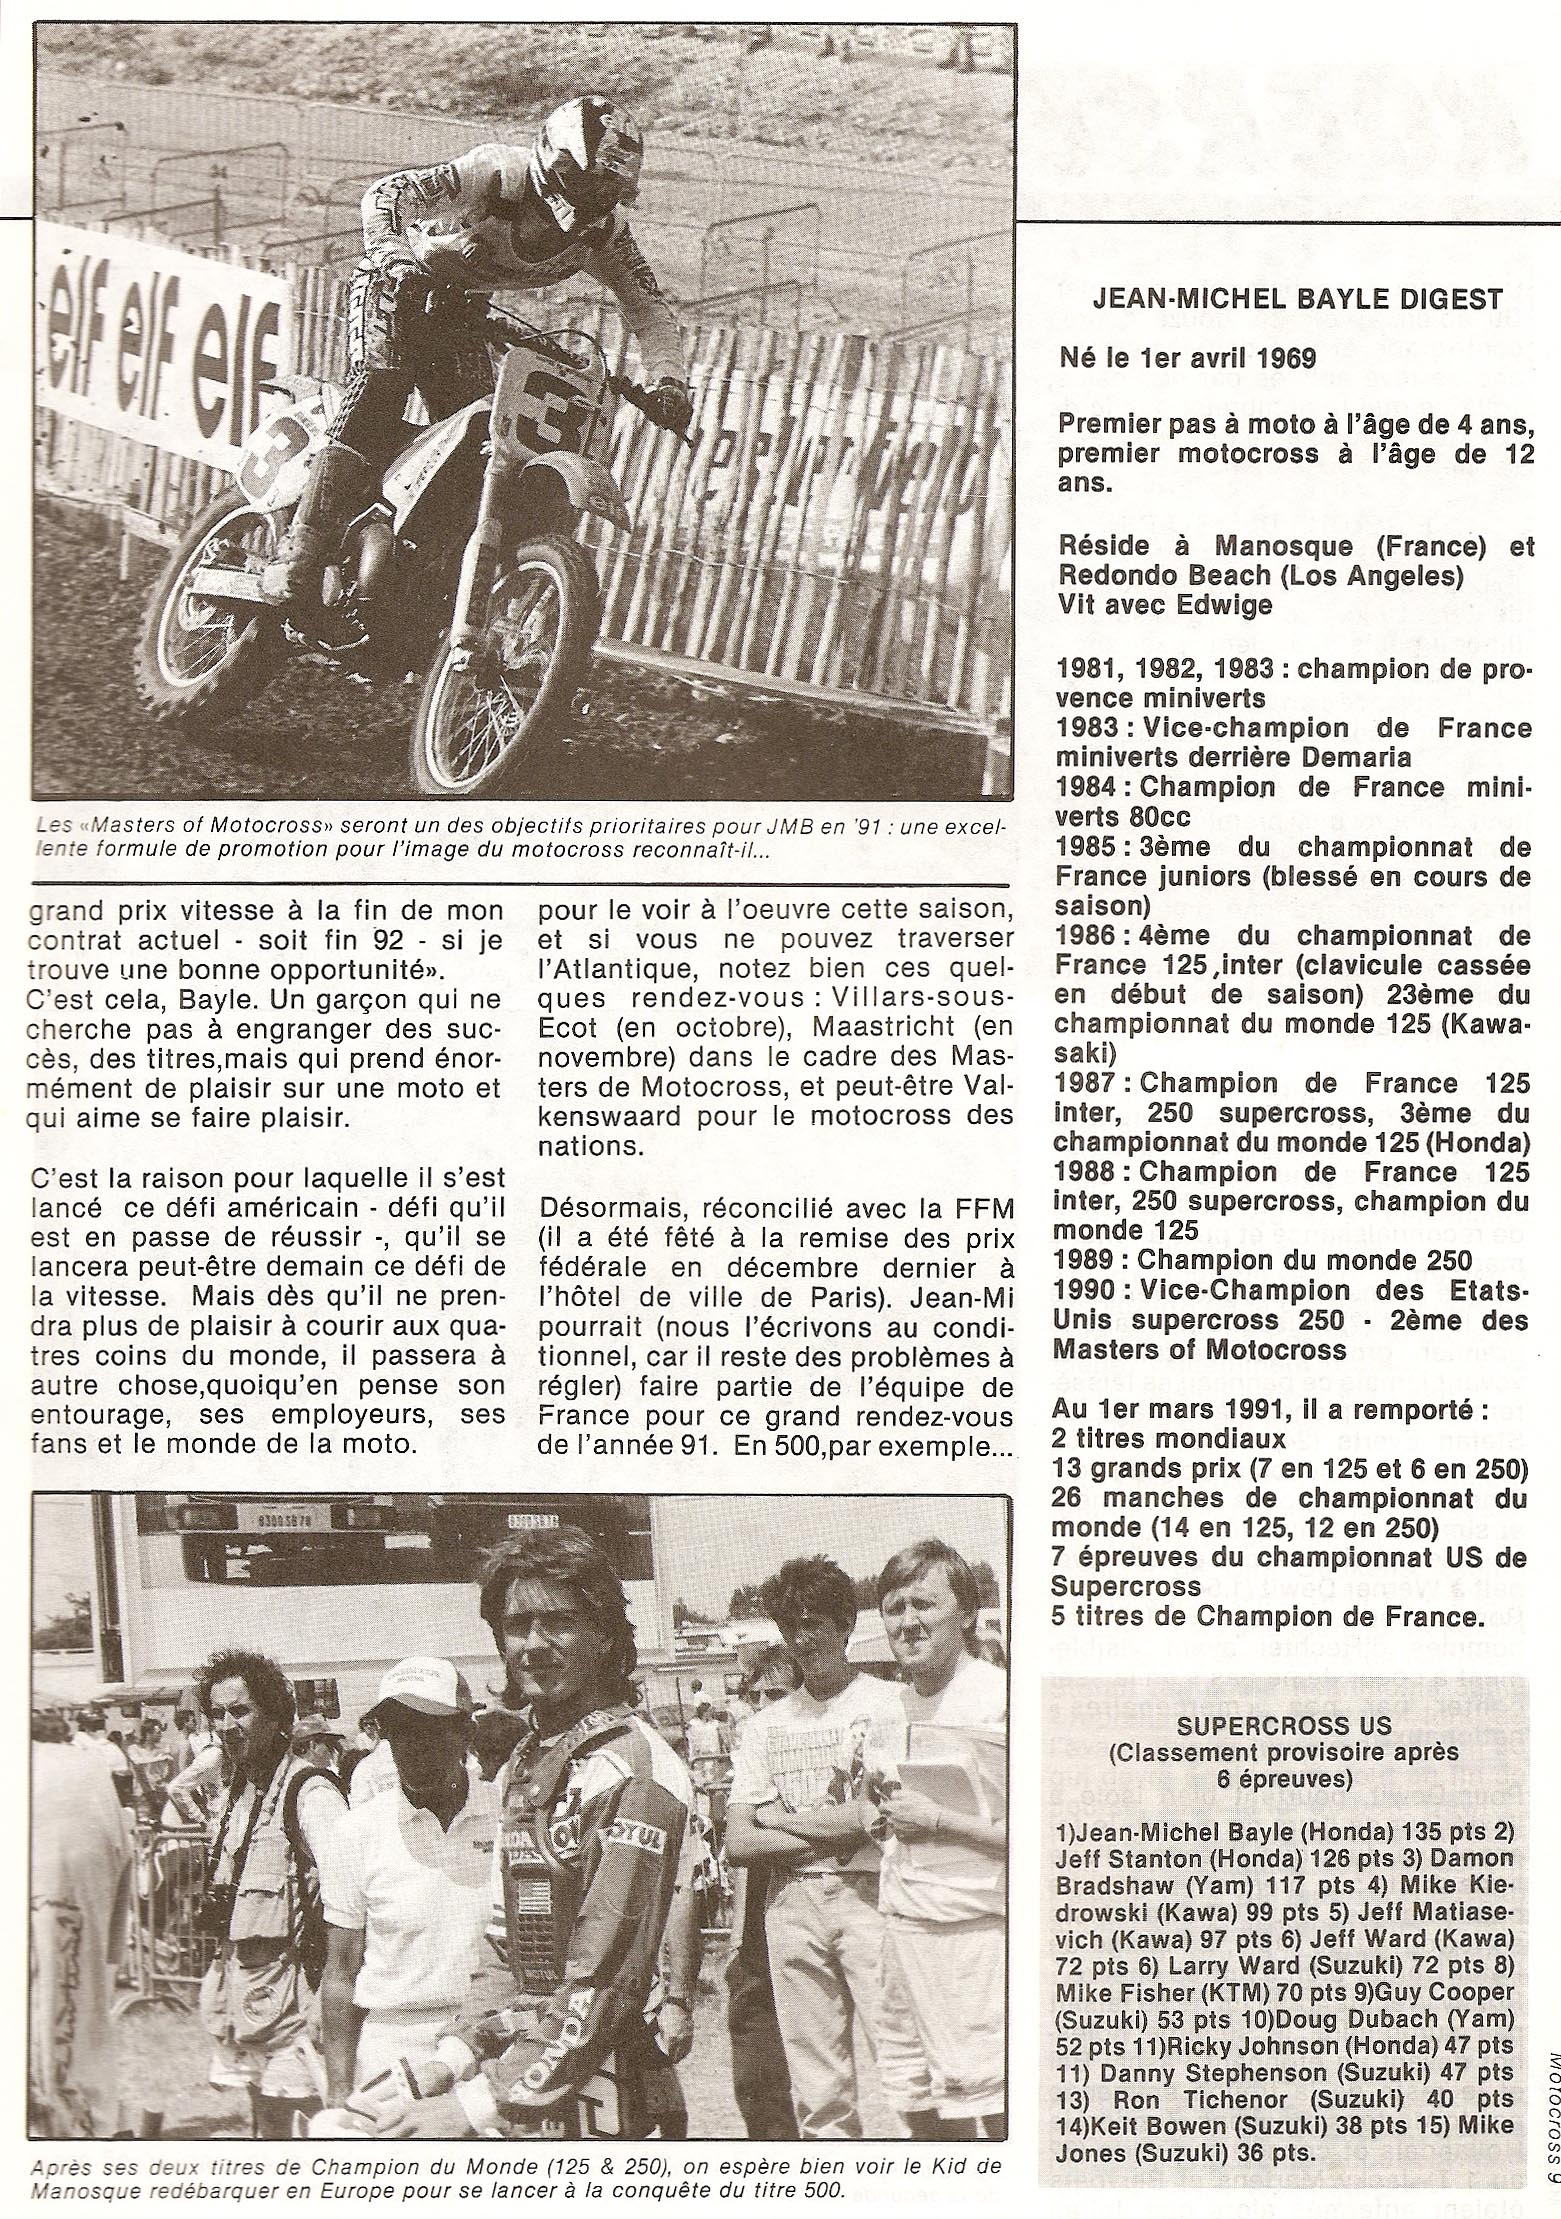 Articles sur Jean-Michel Bayle par le magzine belge Motocross, page 4